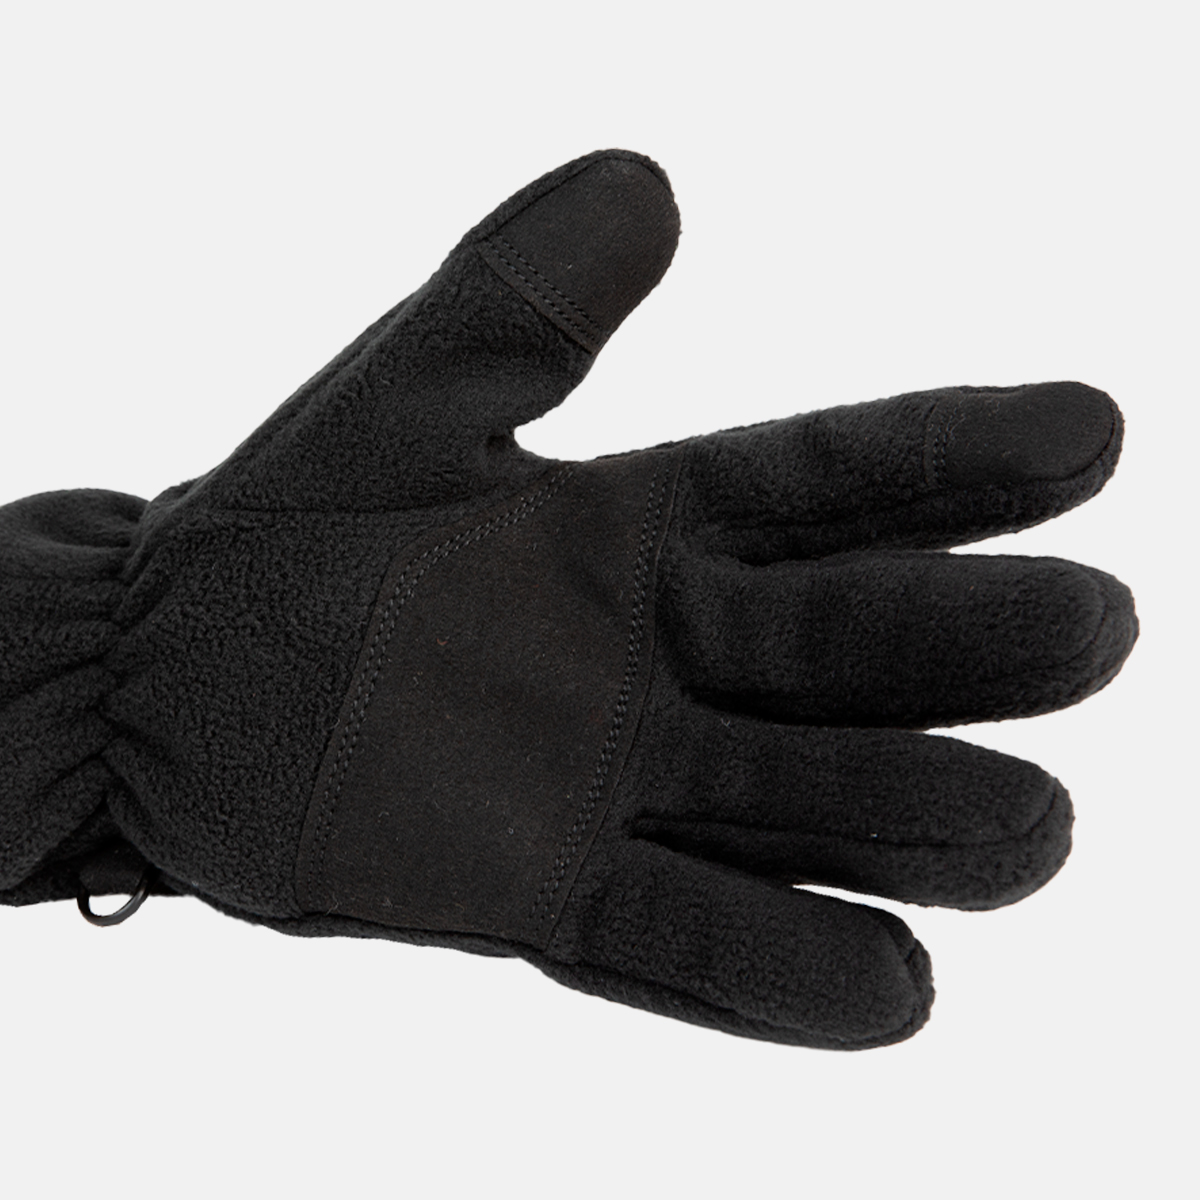  gants unisexes noirs i vik